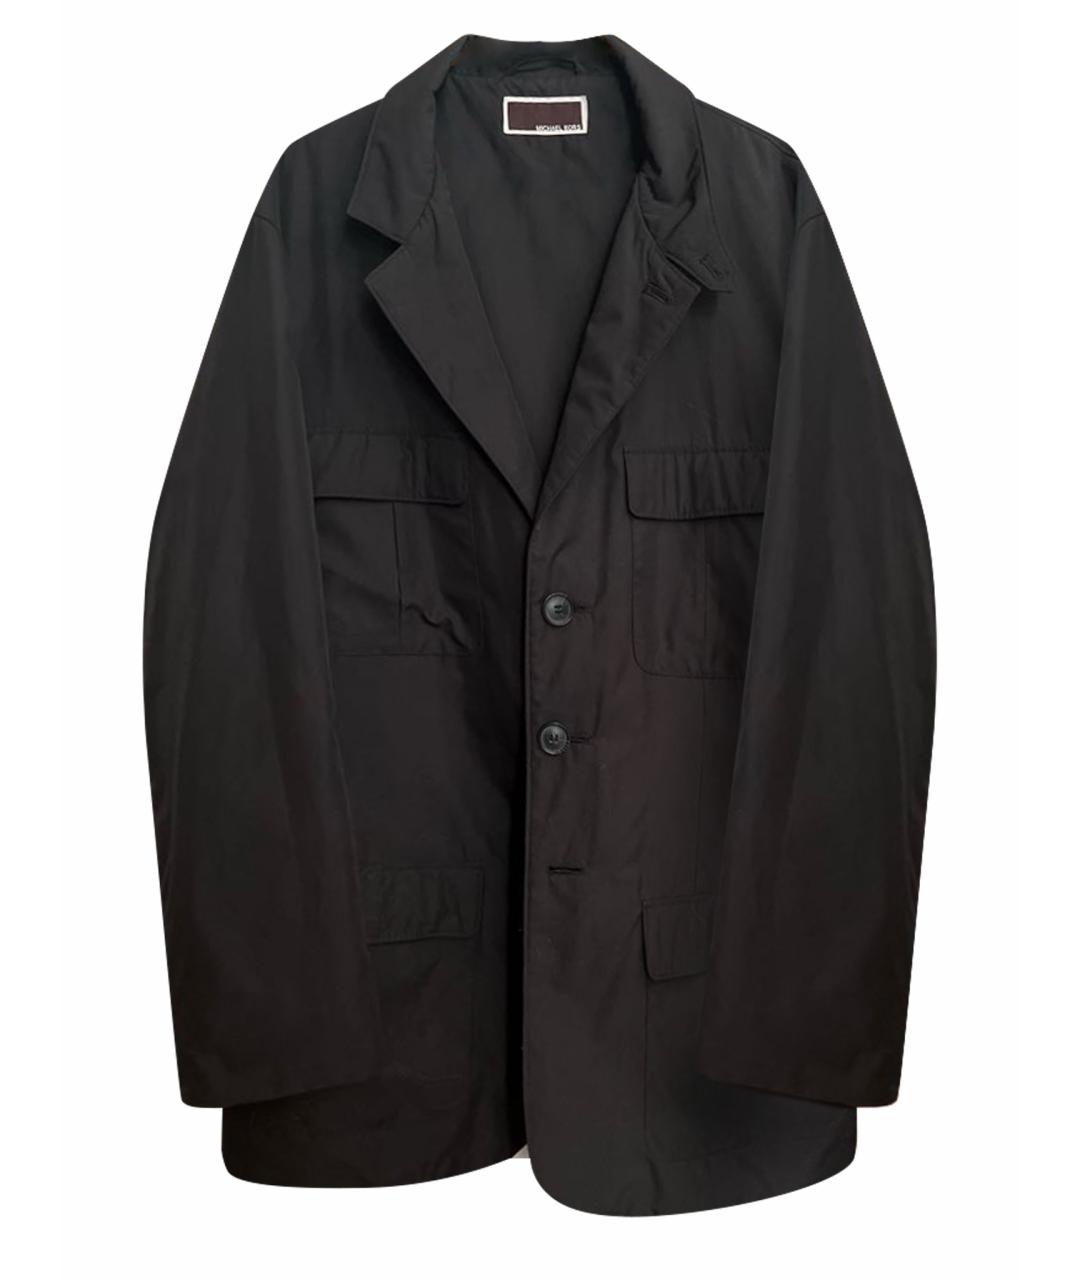 MICHAEL KORS Черная полиэстеровая куртка, фото 1